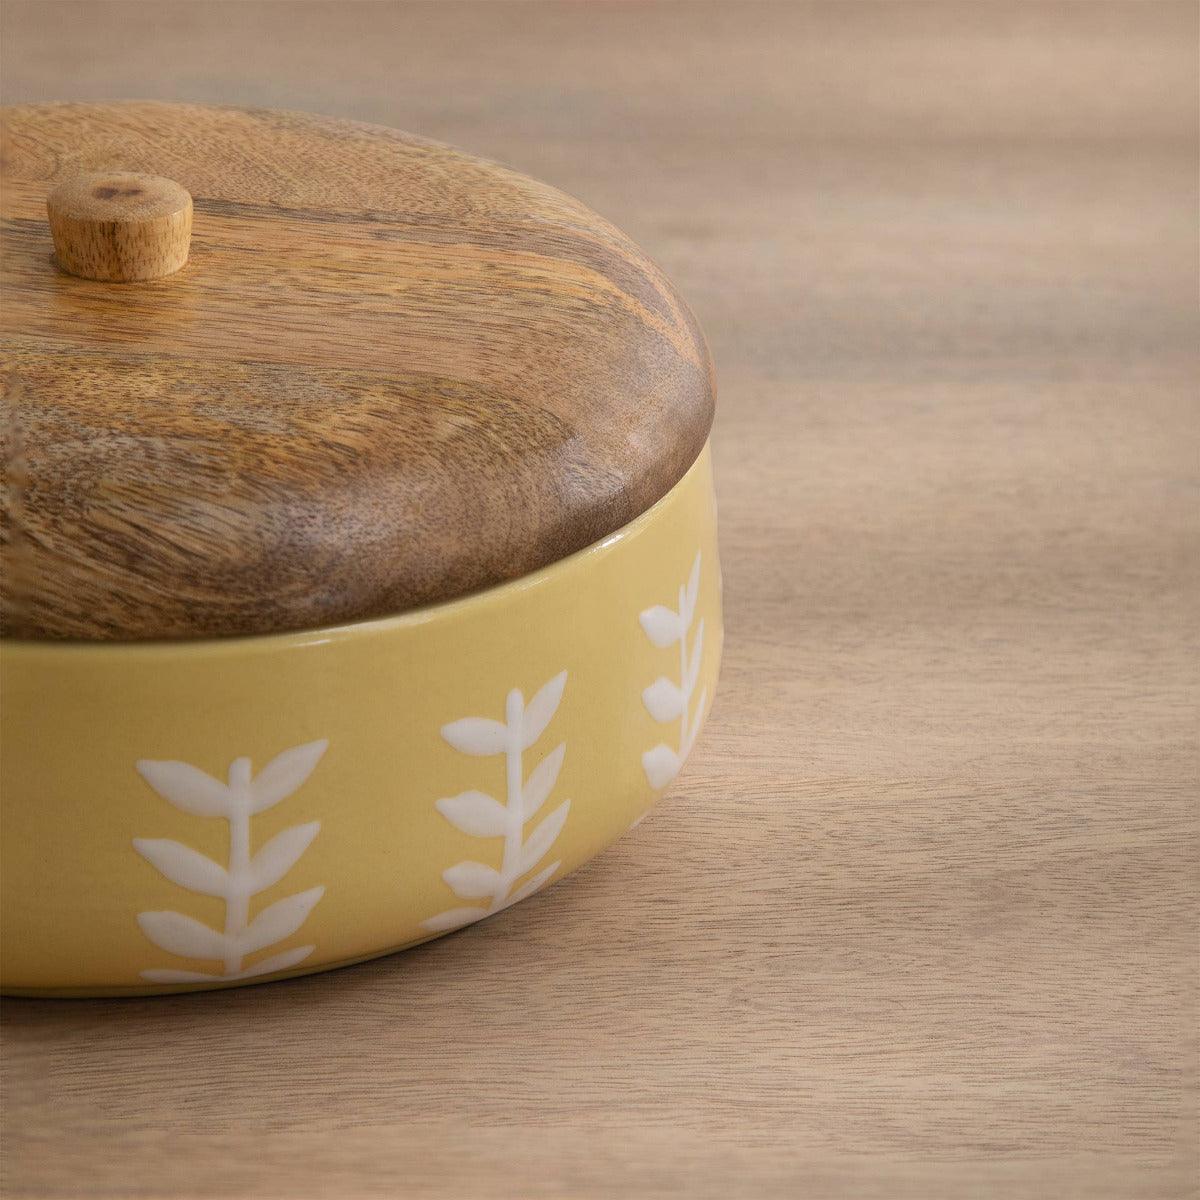 Gamboge ceramic roti box with wooden lid